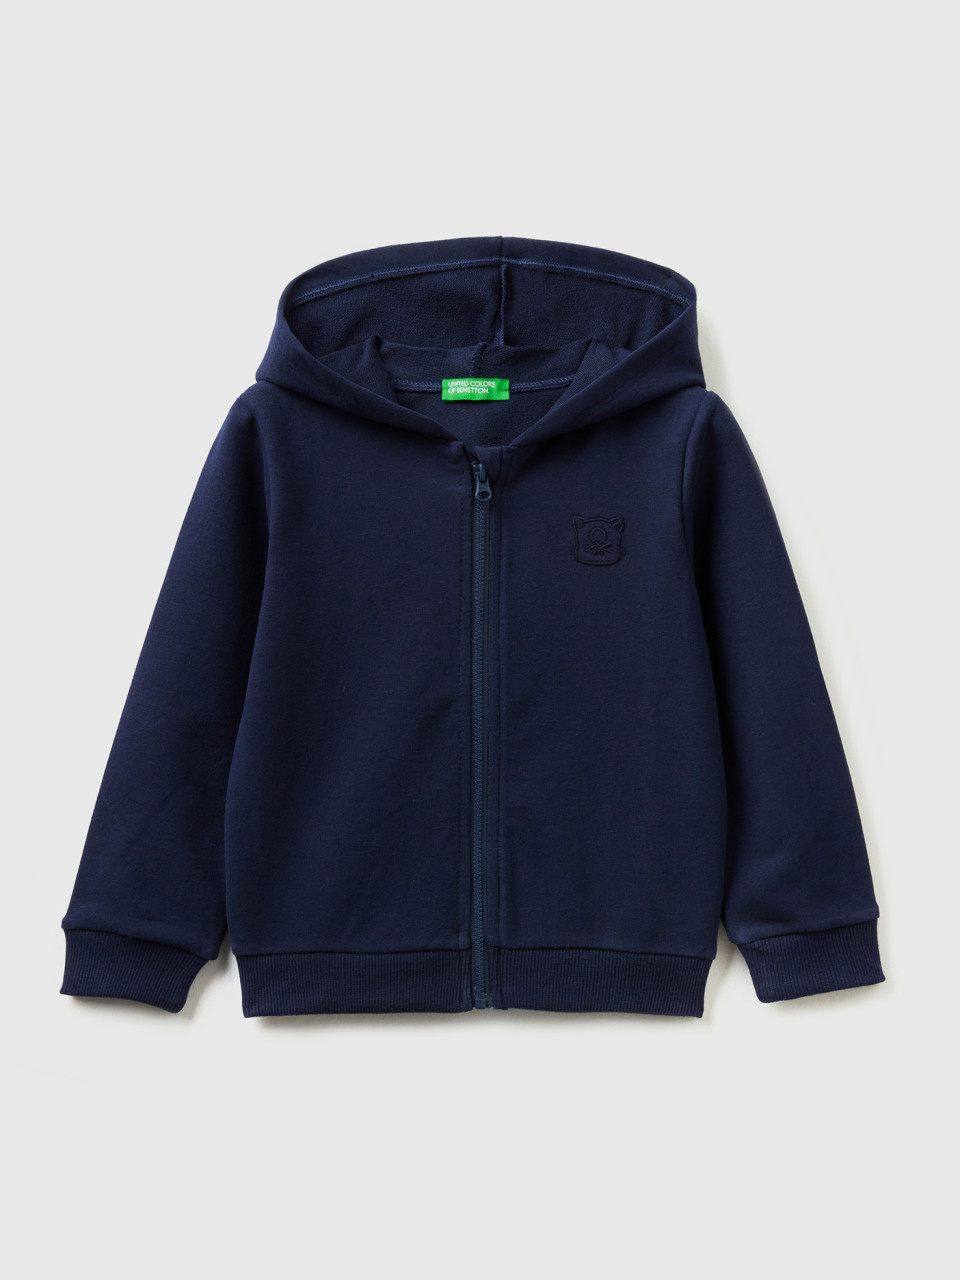 Benetton, Warmes Sweatshirt Mit Reißverschluss Und Aufgesticktem Logo, Dunkelblau, female